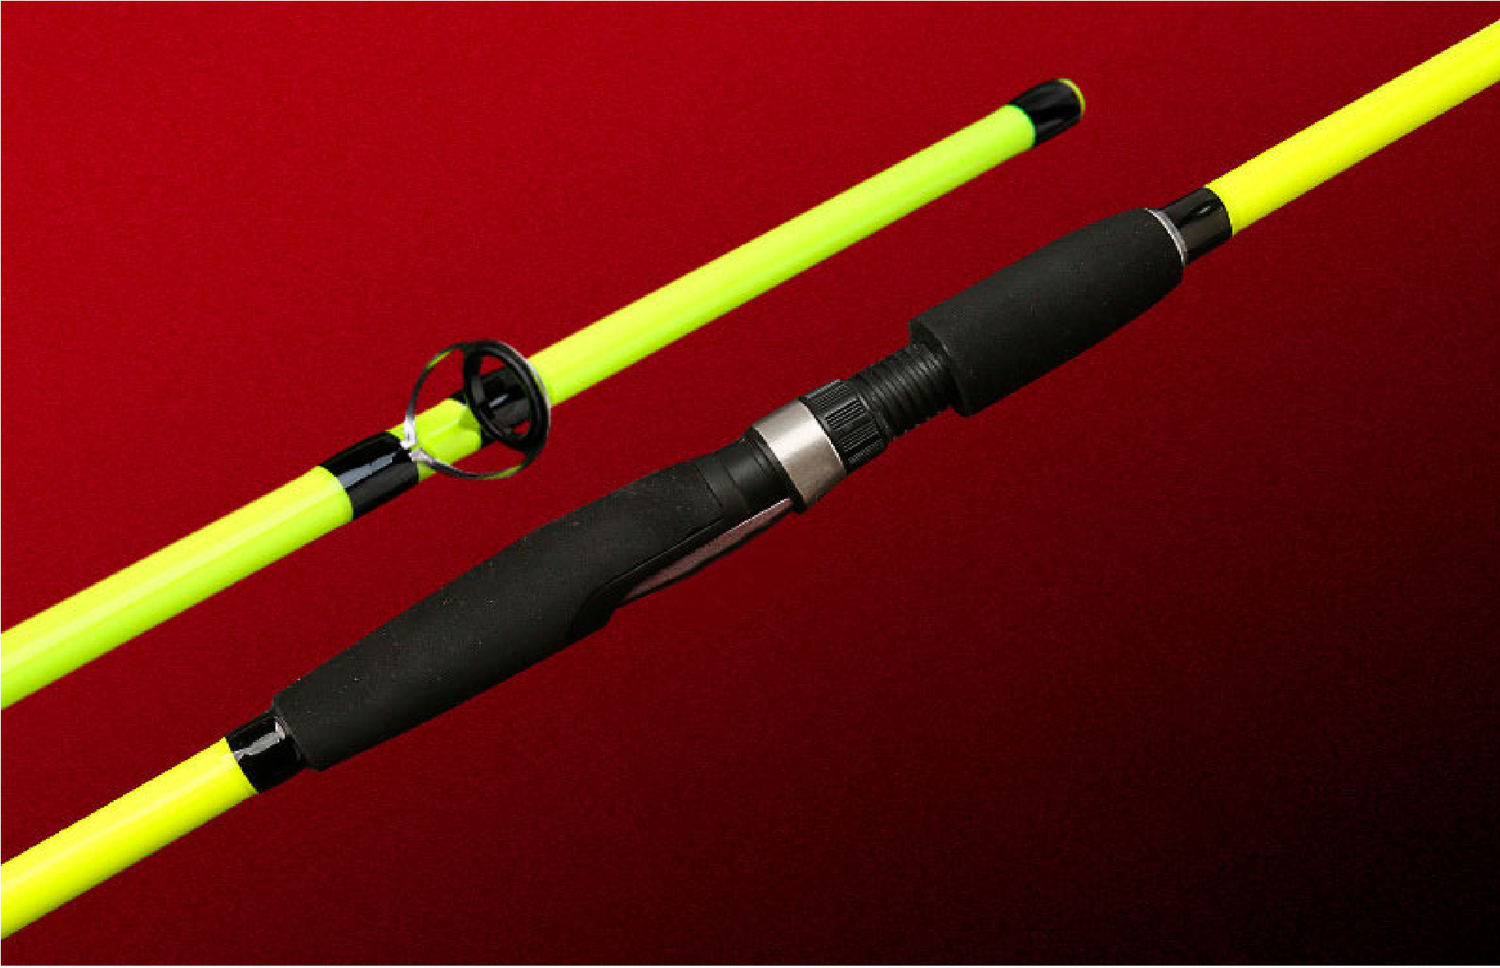 Caña pescar fibra carbono flexible amarilla 160 cm CÑS34